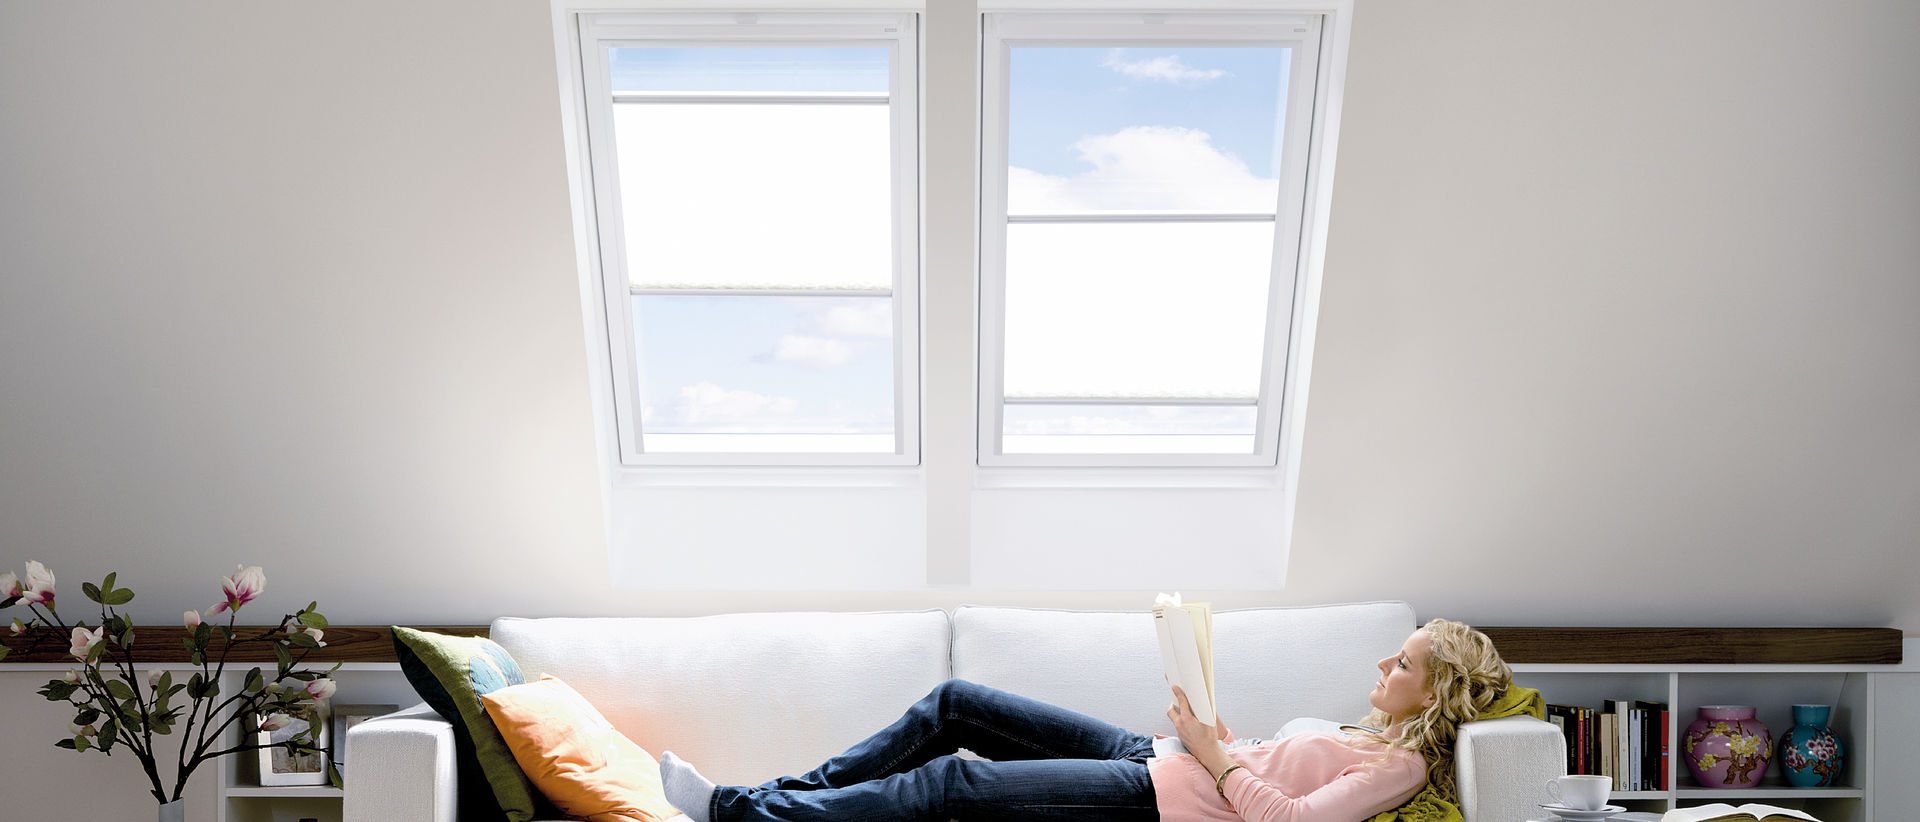 Lesende Frau auf Couch unter zwei Dachfenstern